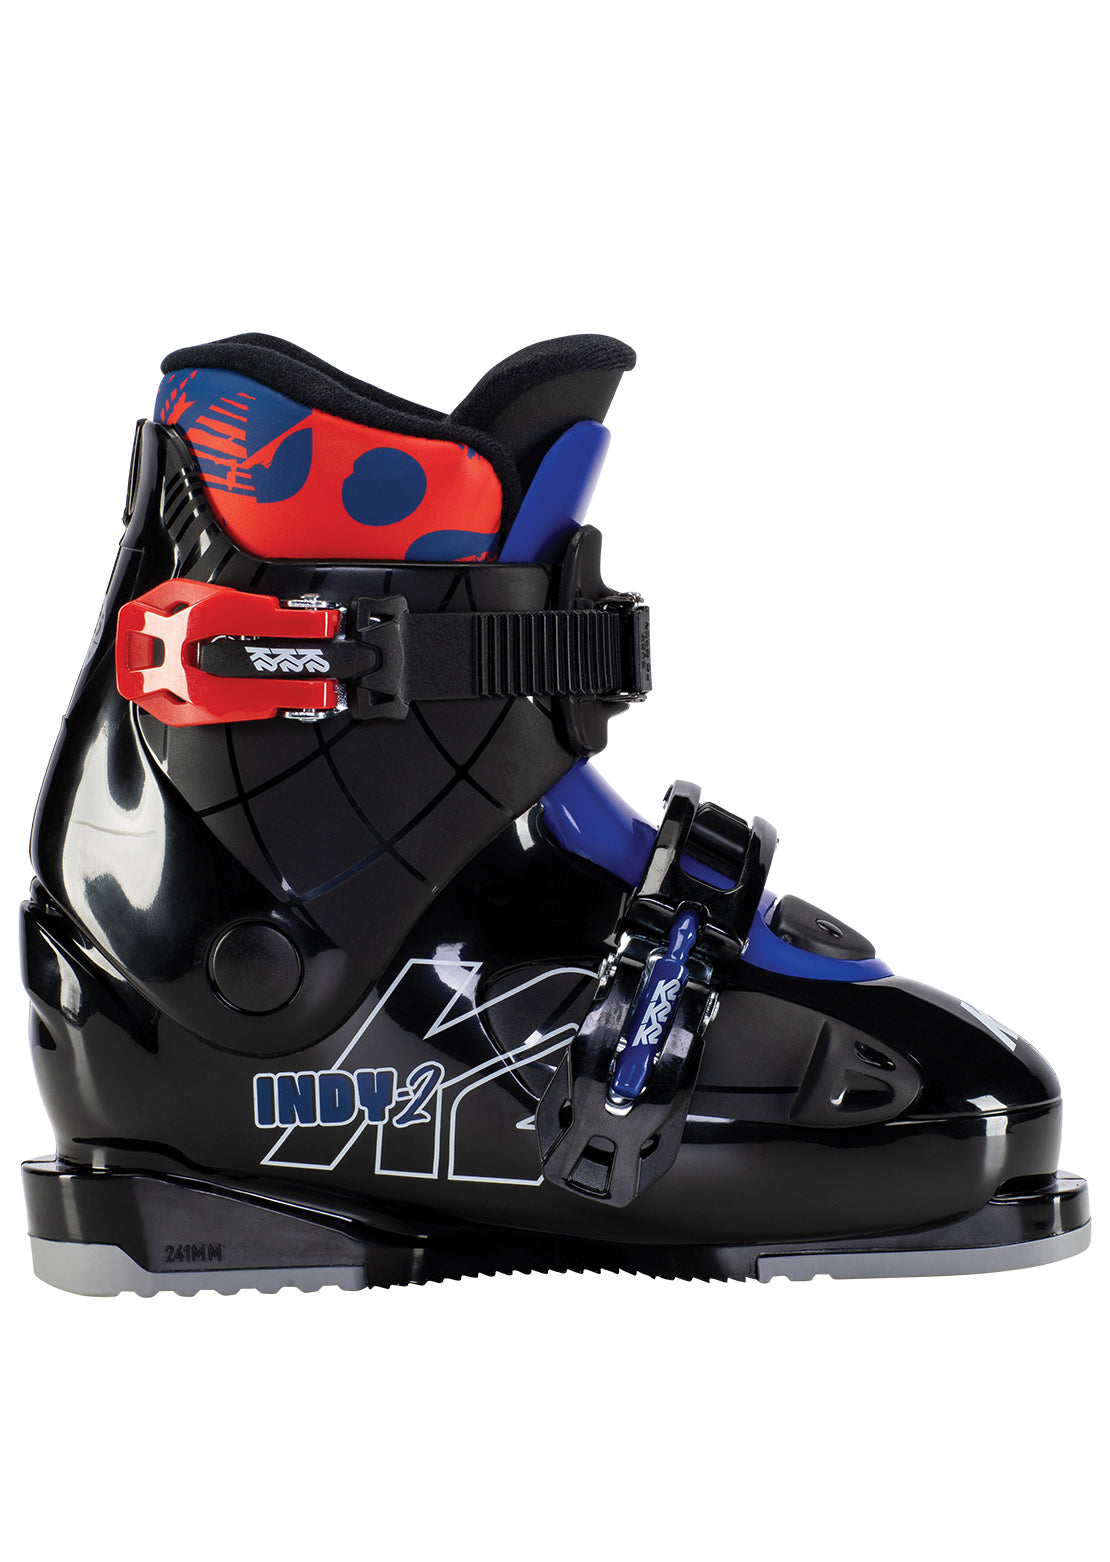 K2 Junior Indy 2 Ski Boots Black/Red